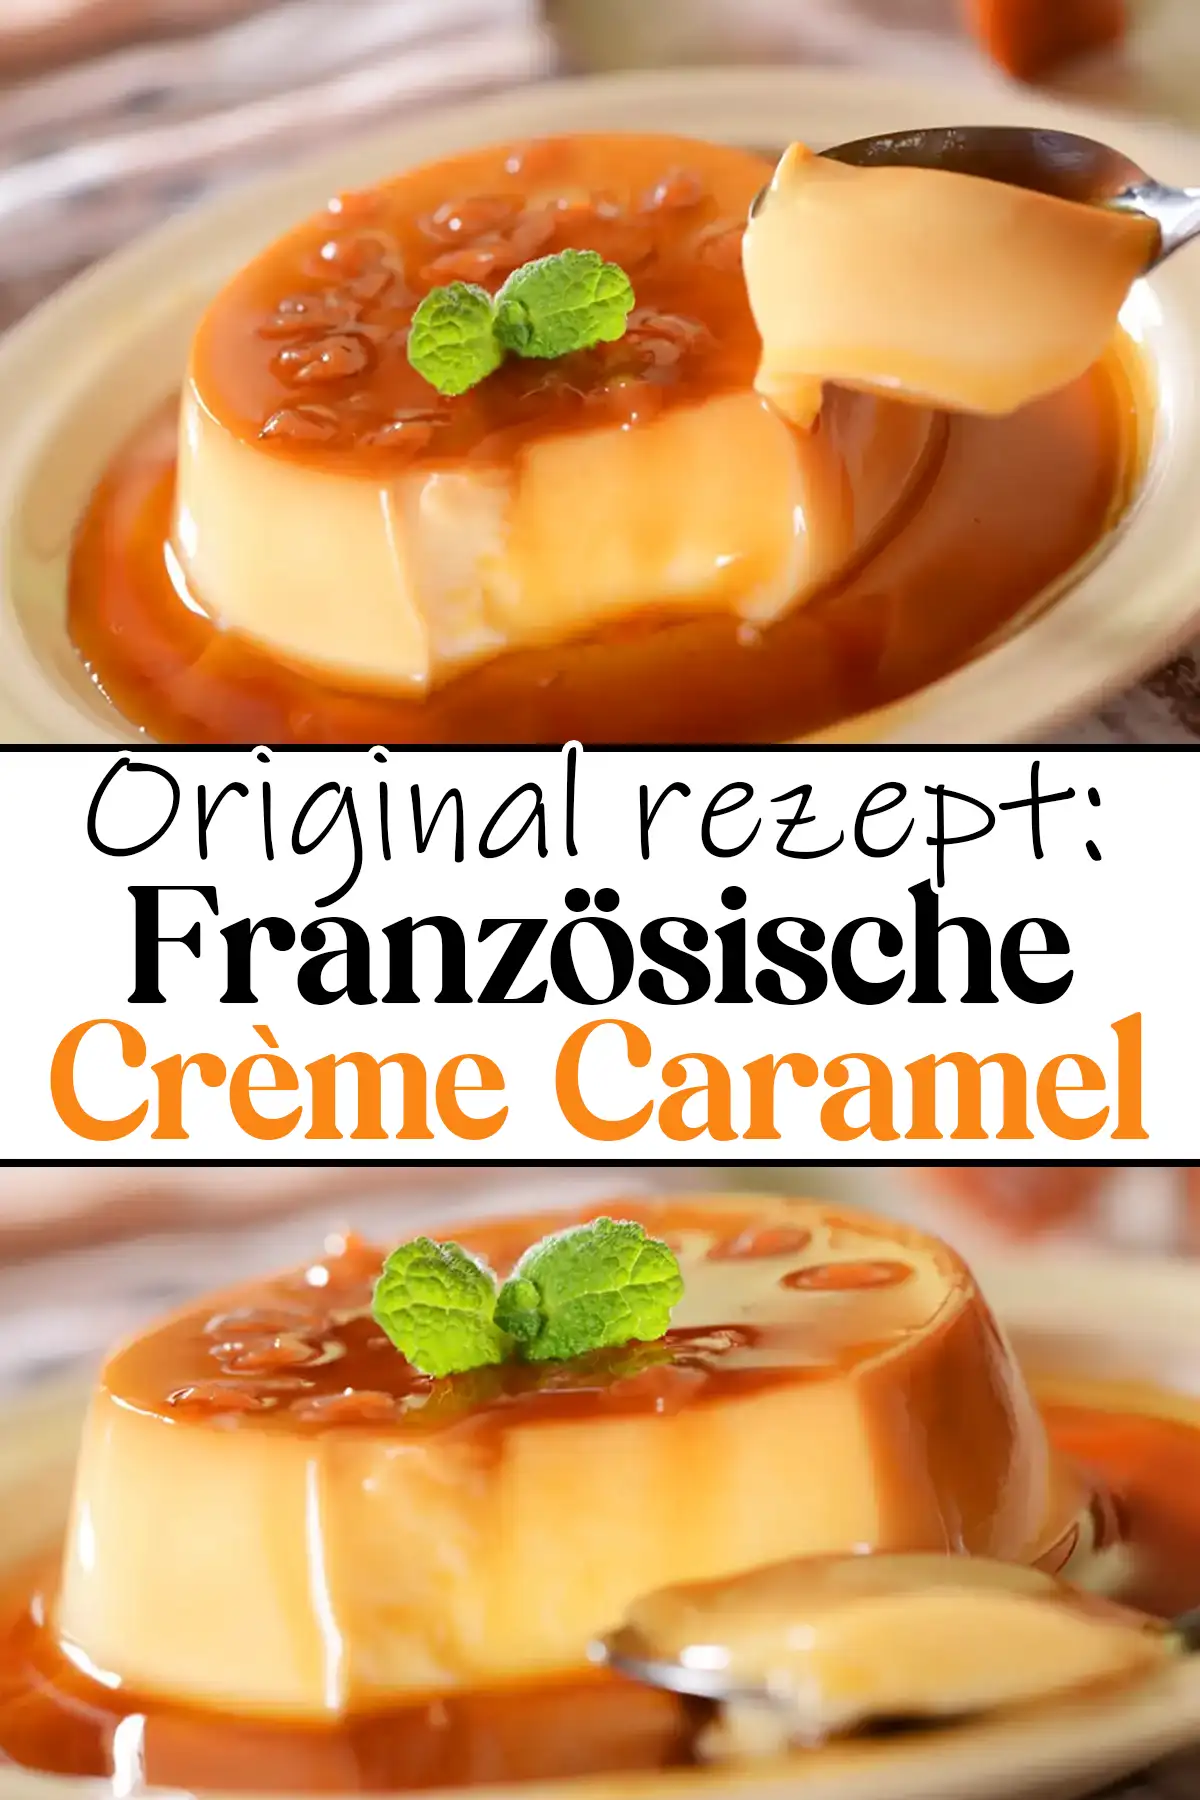 Original französische Crème Caramel Rezept